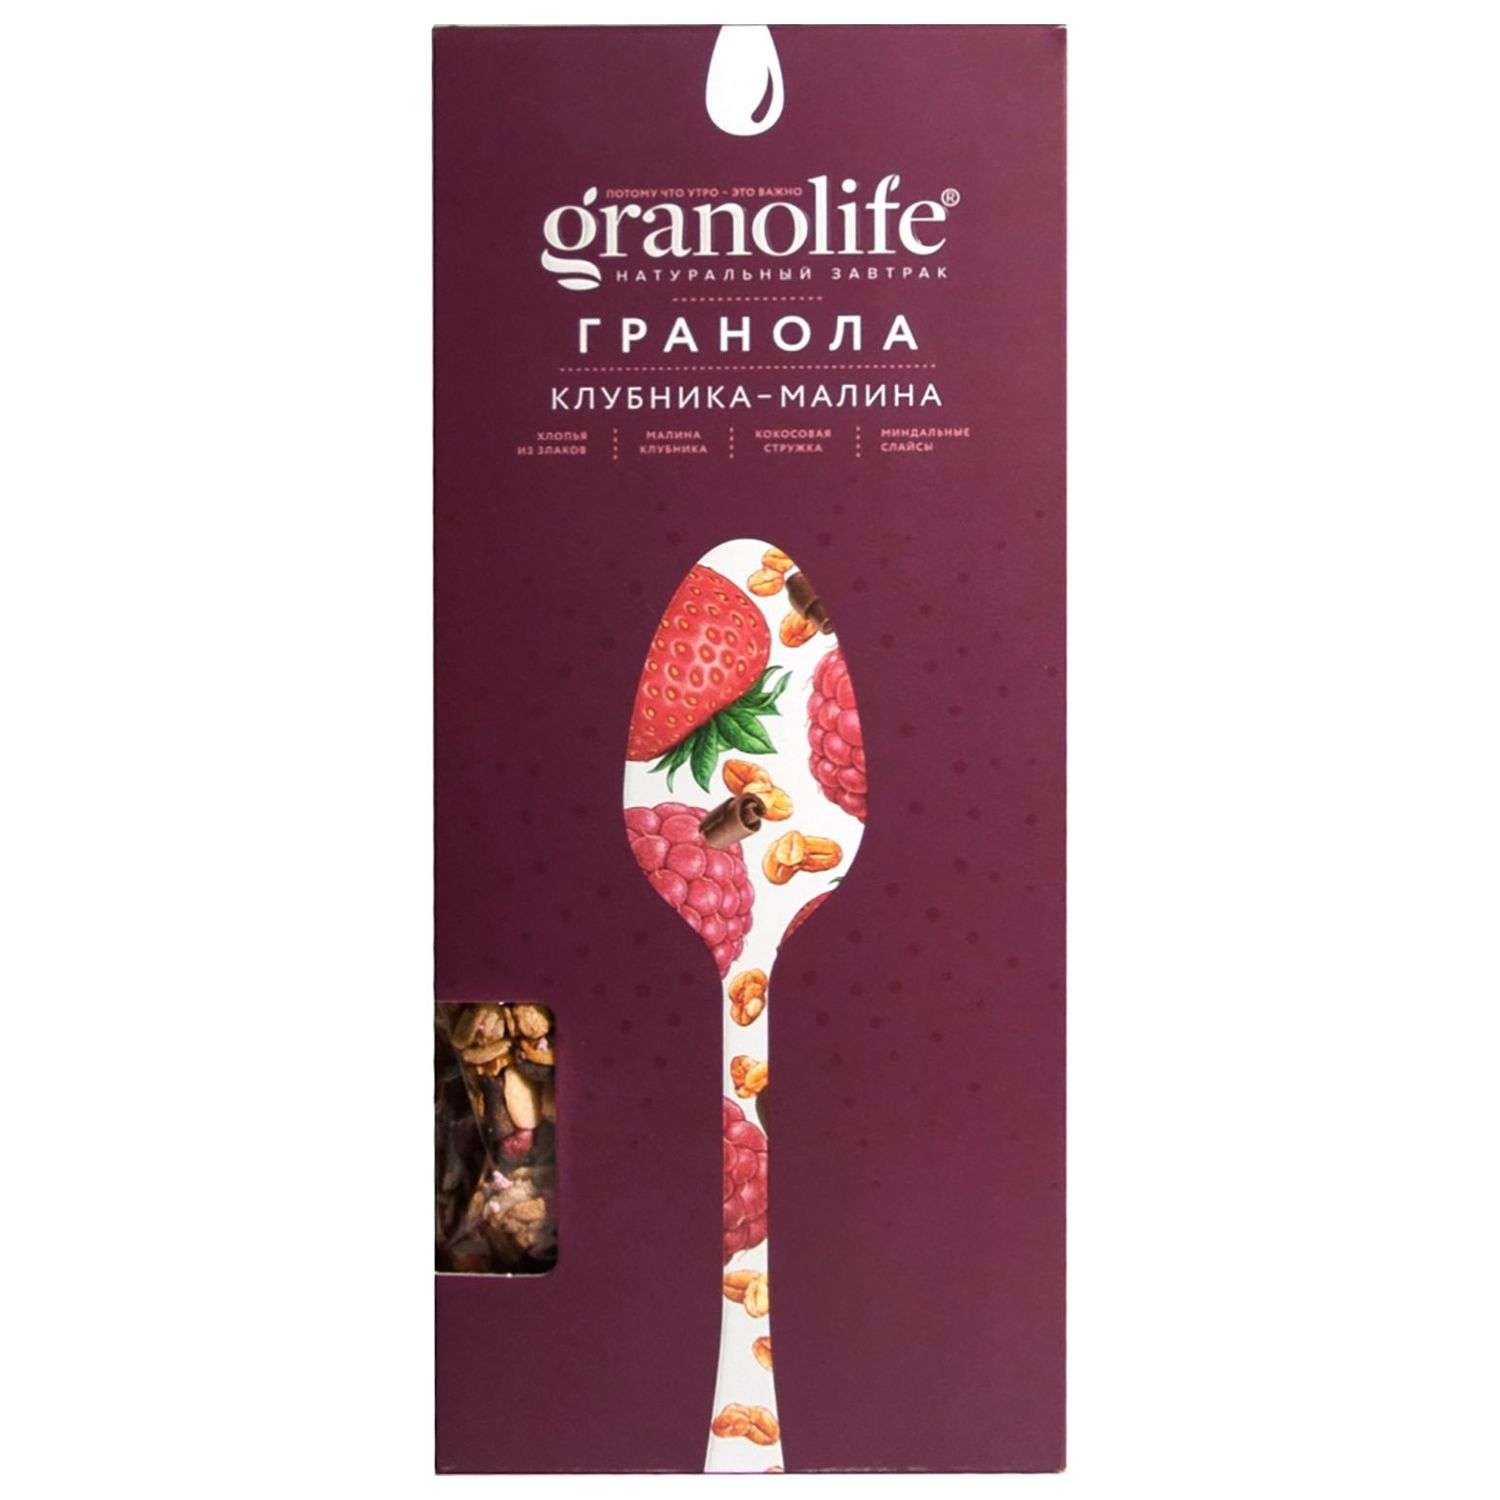 Гранола Granolife клубника-малина 400г - фото 2